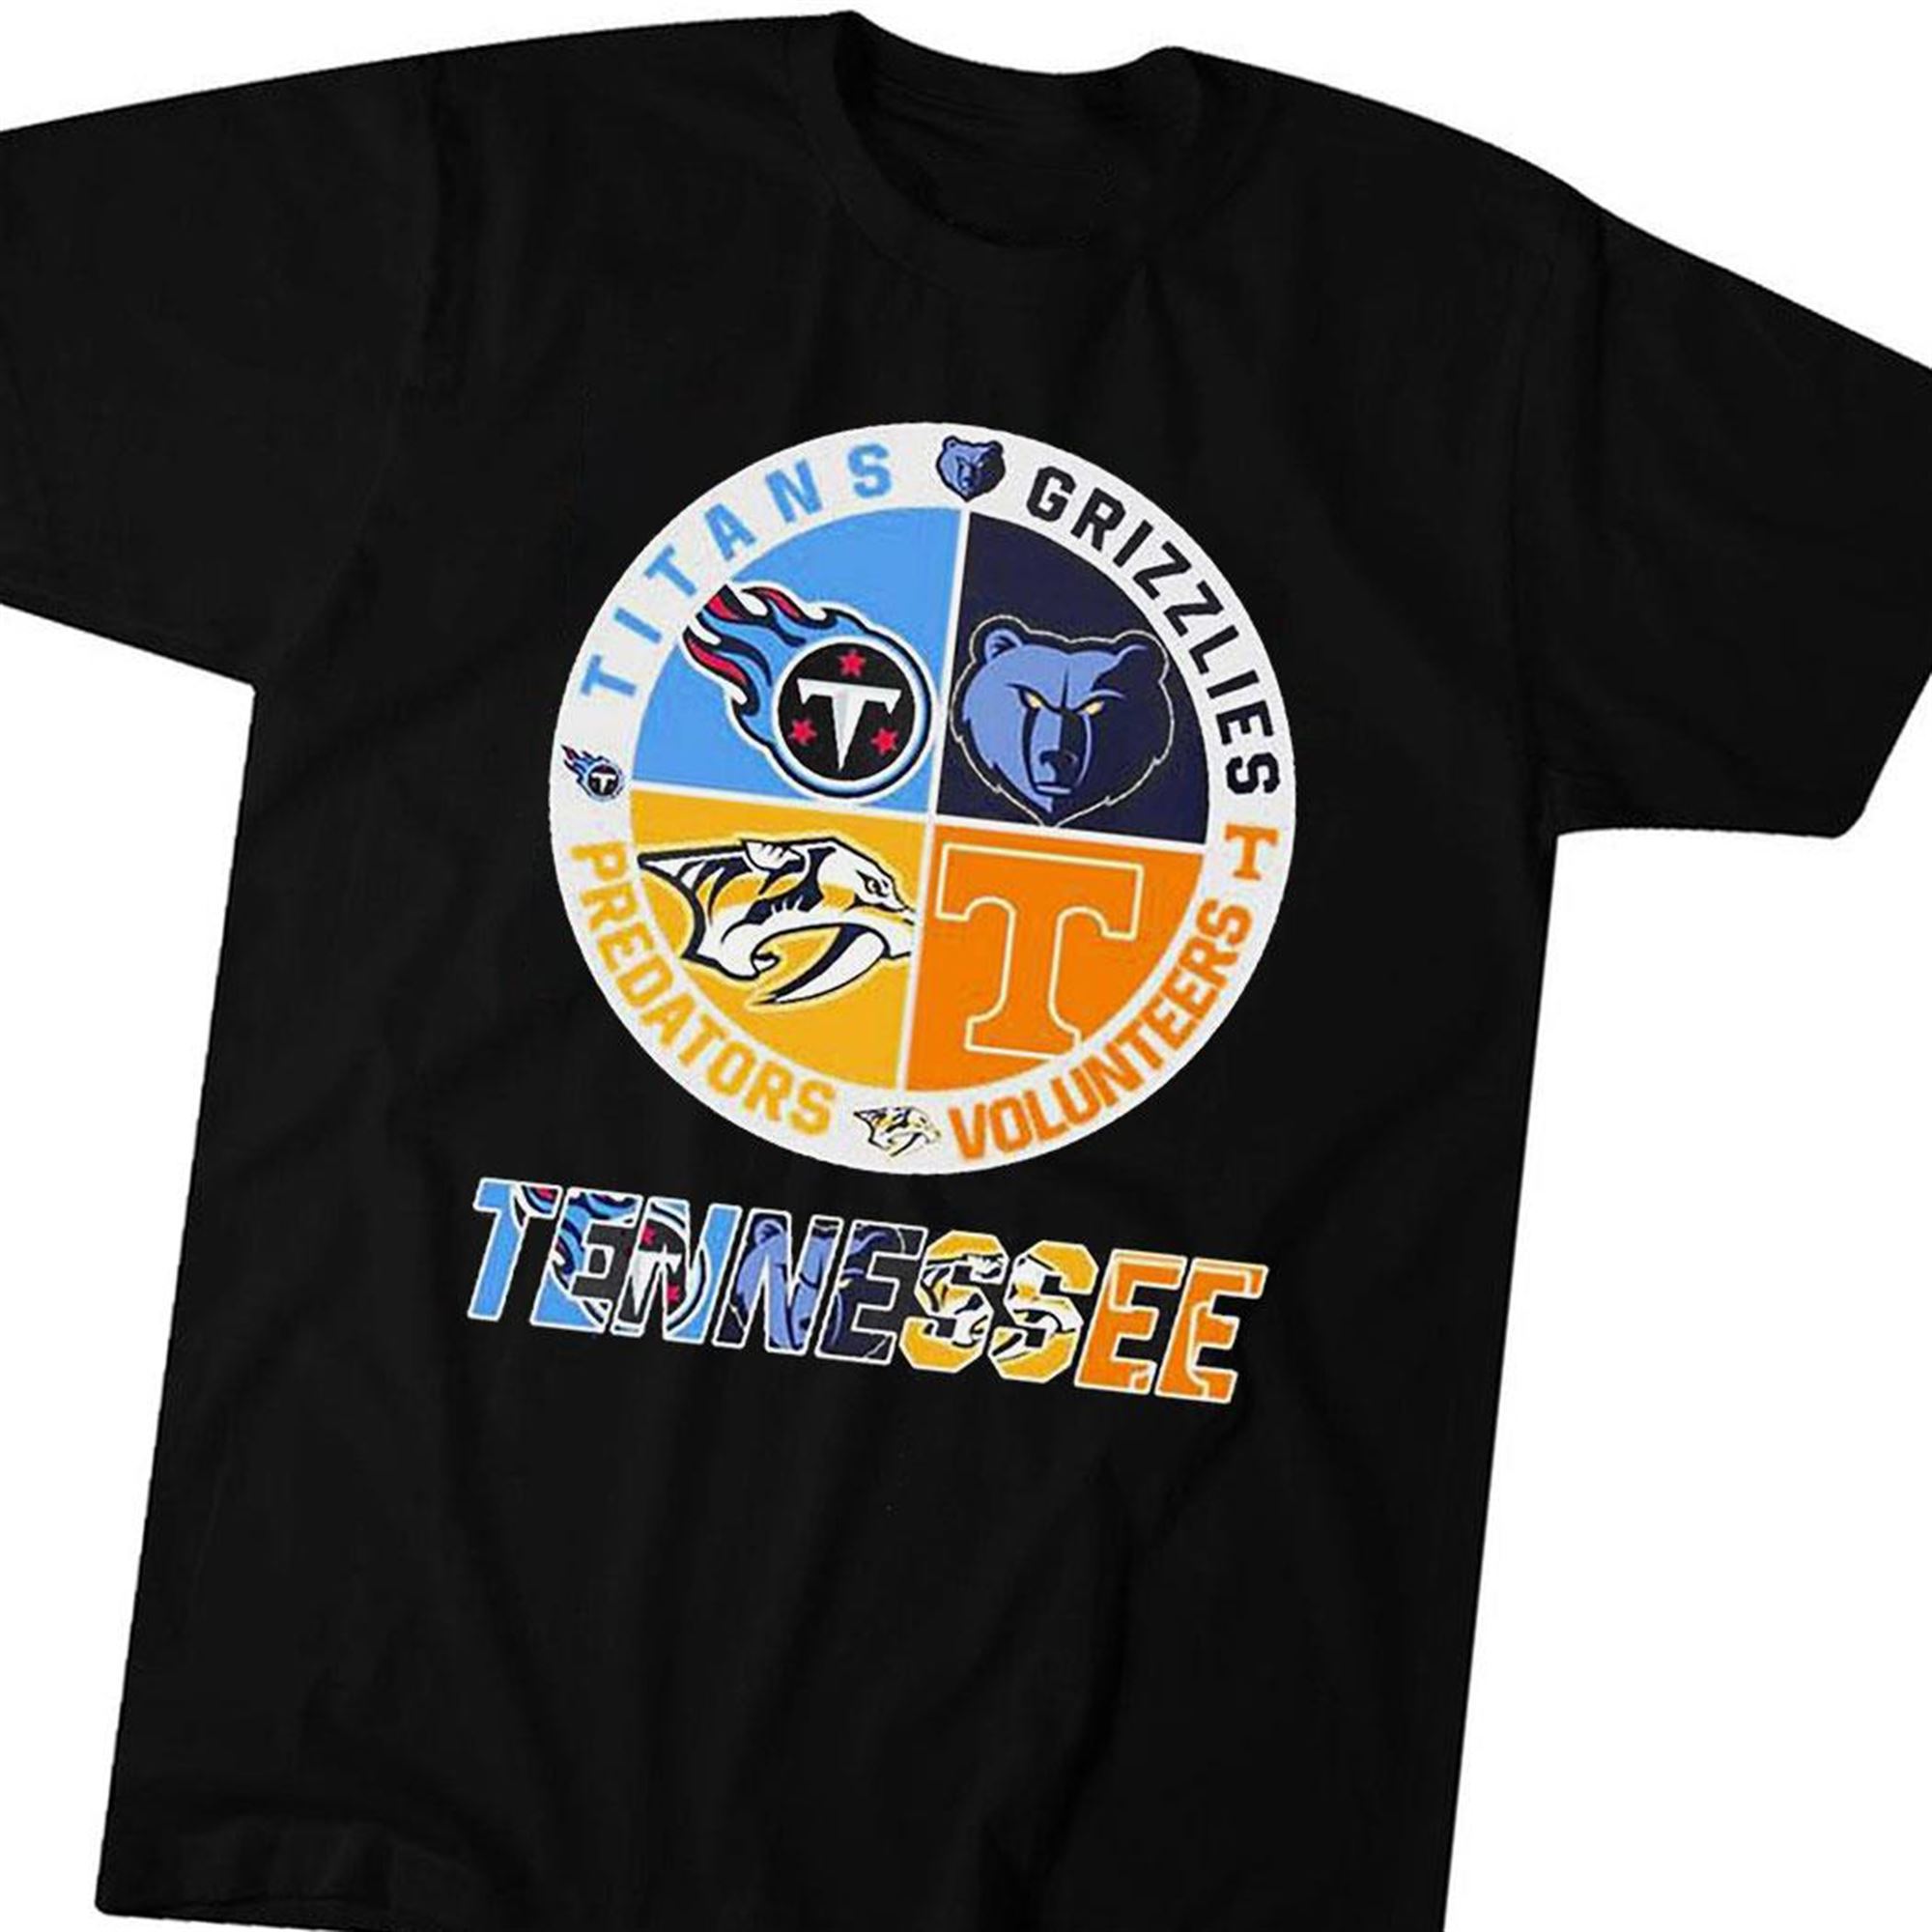 Tennessee Titans Grizzlies Volunteers And Predators Sports Teams T-shirt Hoodie